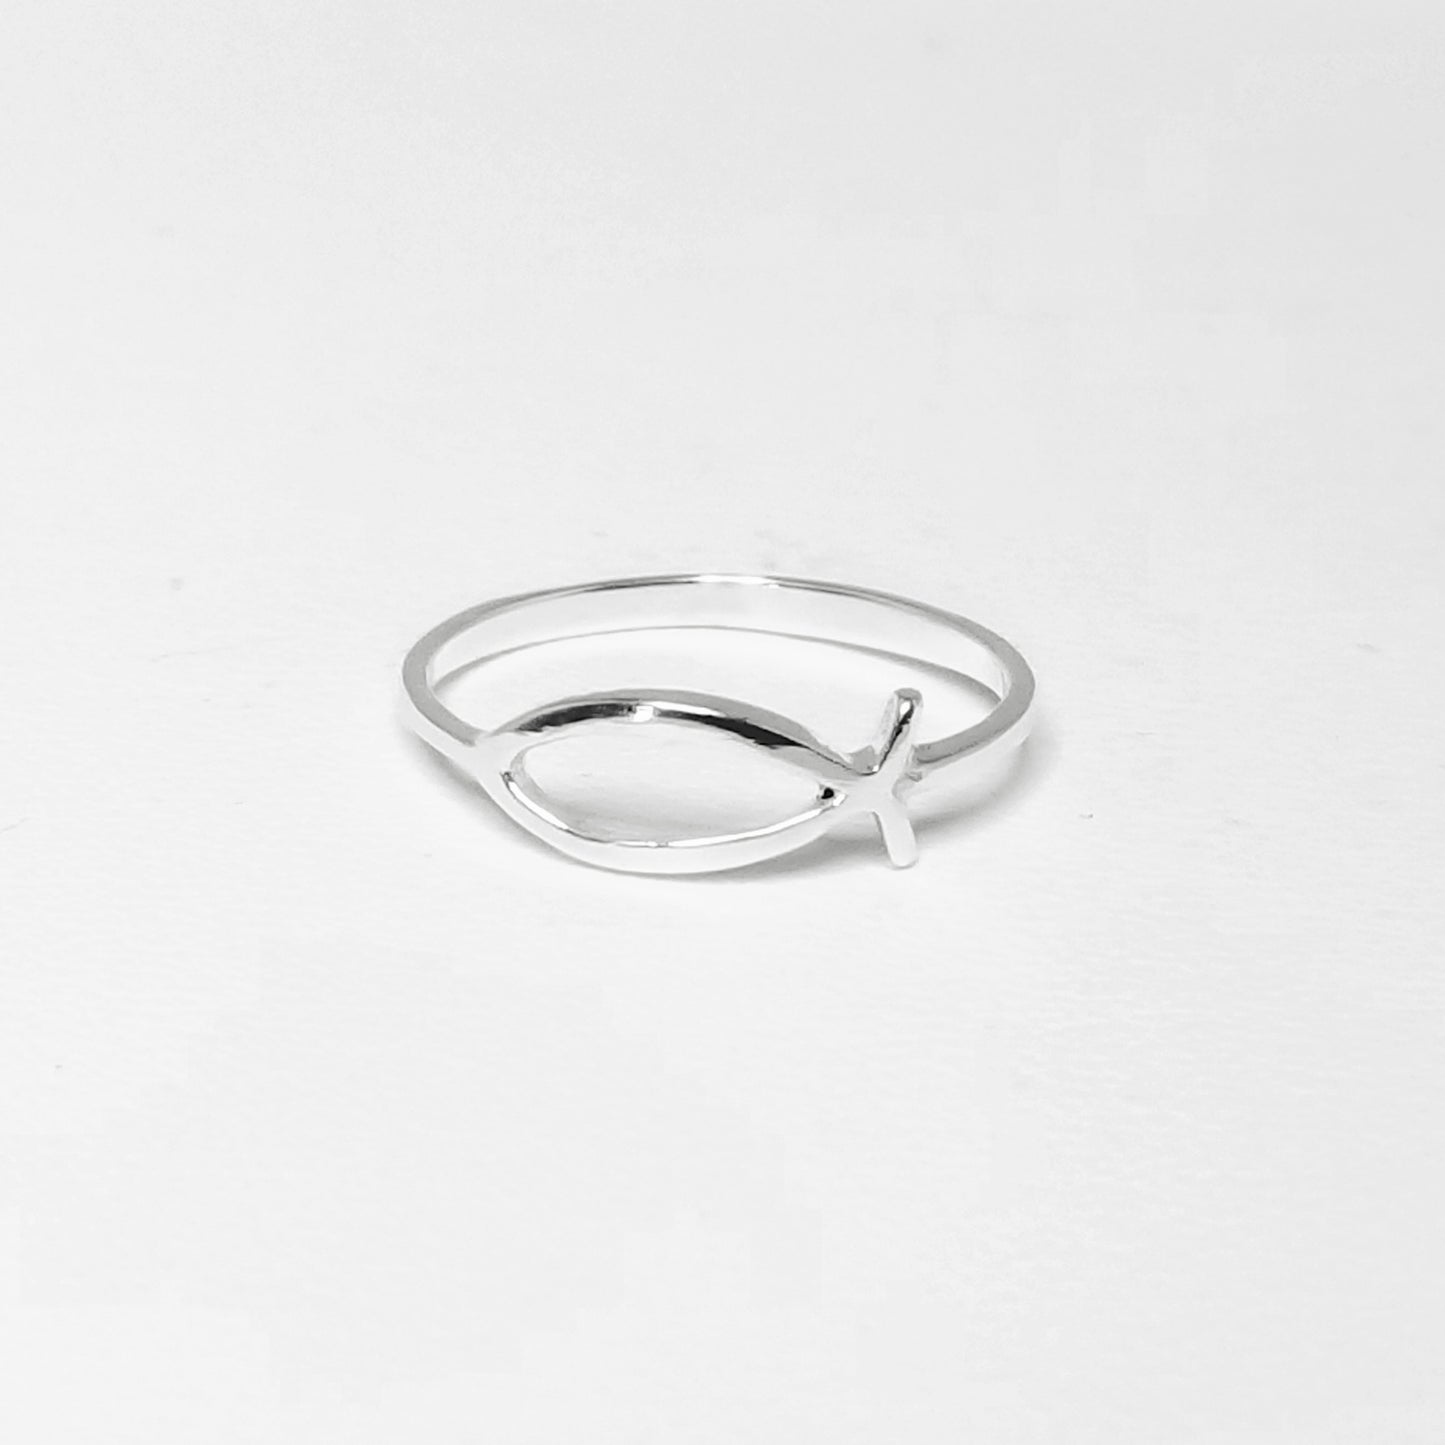 Fishbone (Ichtys) Ring